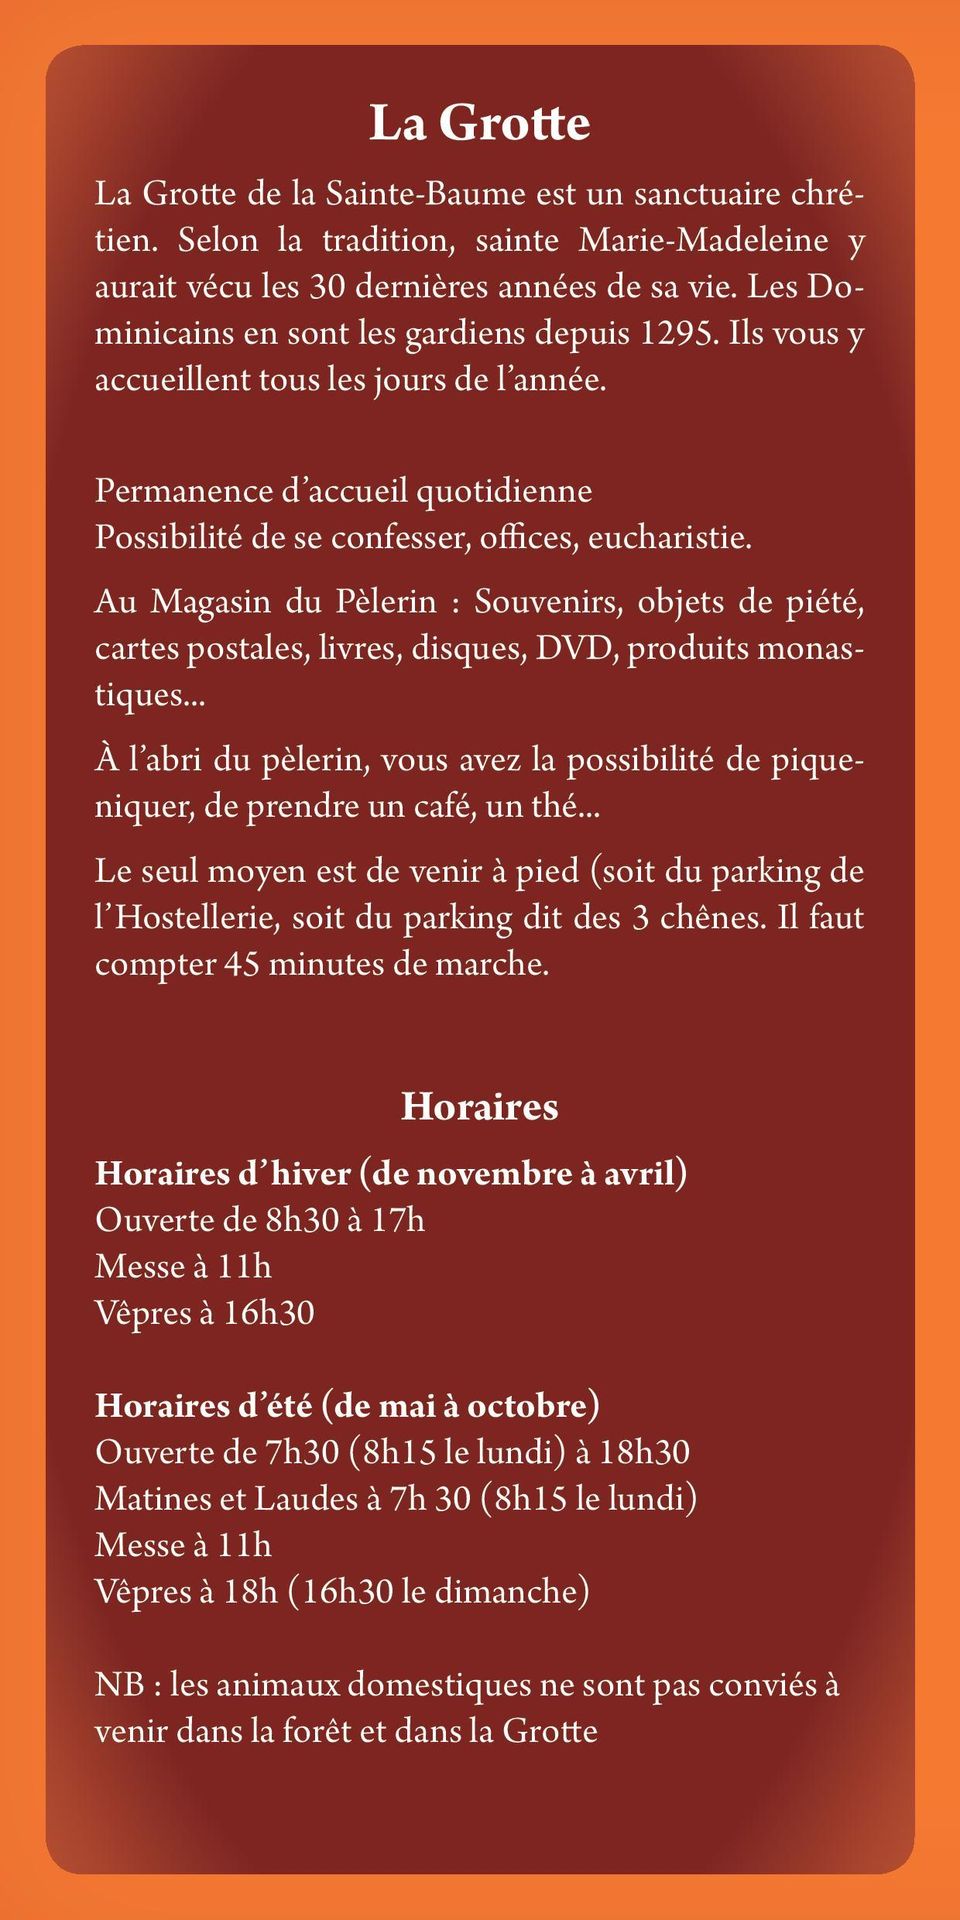 Au Magasin du Pèlerin : Souvenirs, objets de piété, cartes postales, livres, disques, DVD, produits monastiques.